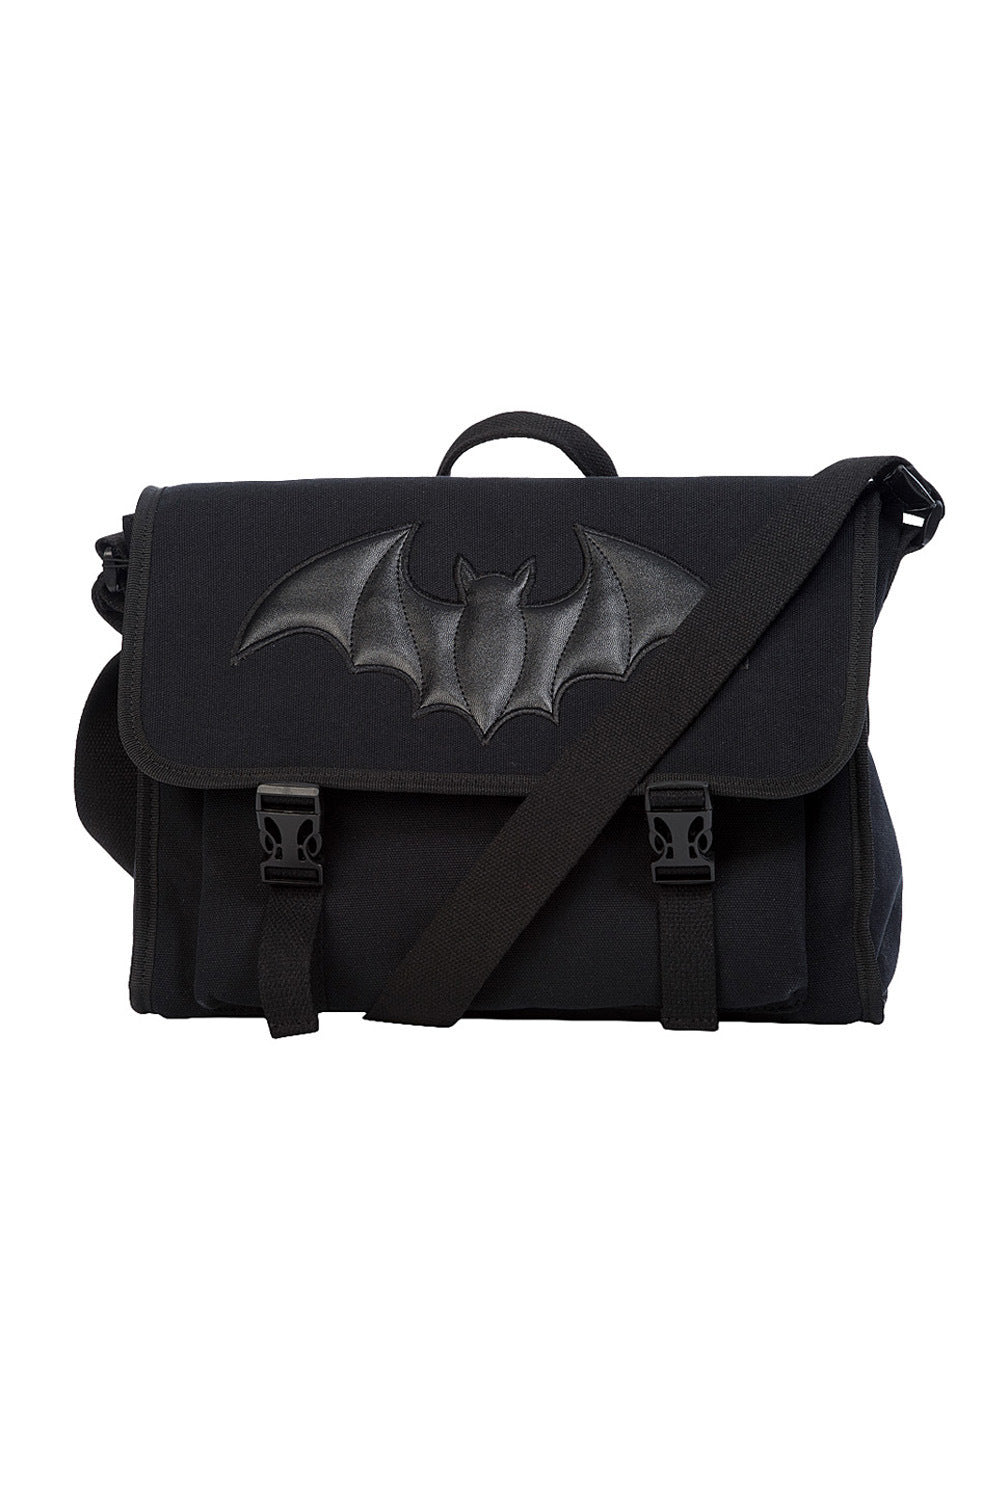 Buy Black Gothic Crossbody Shoulder Bag Red Bat Messenger Bag Online in  India 